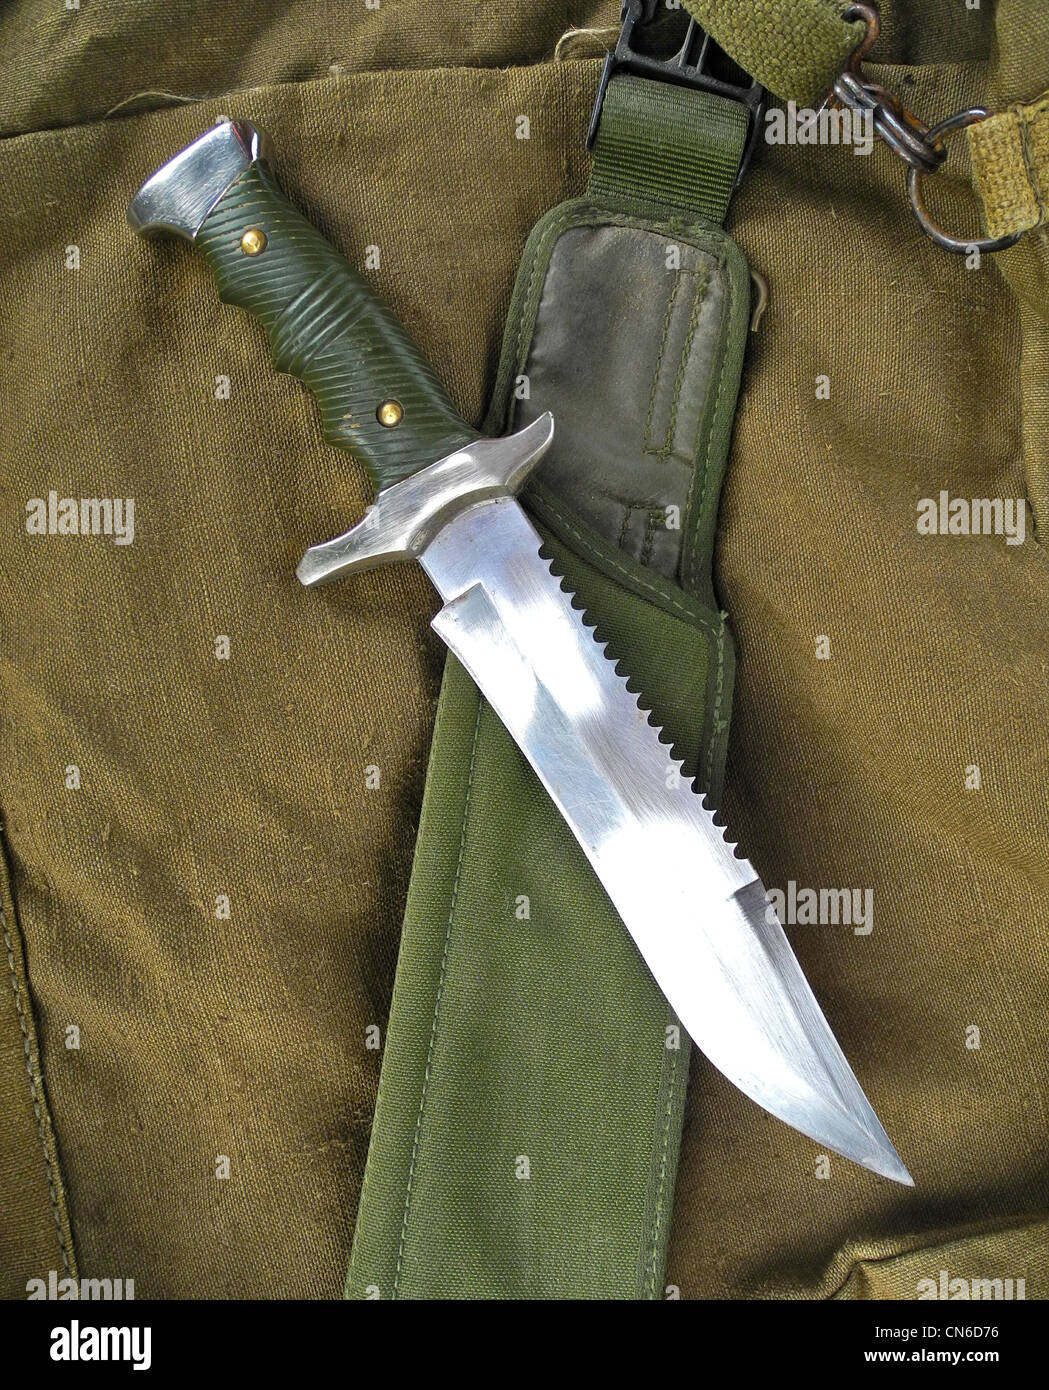 Cuchillos de supervivencia militar y tácticos [TOP 10]